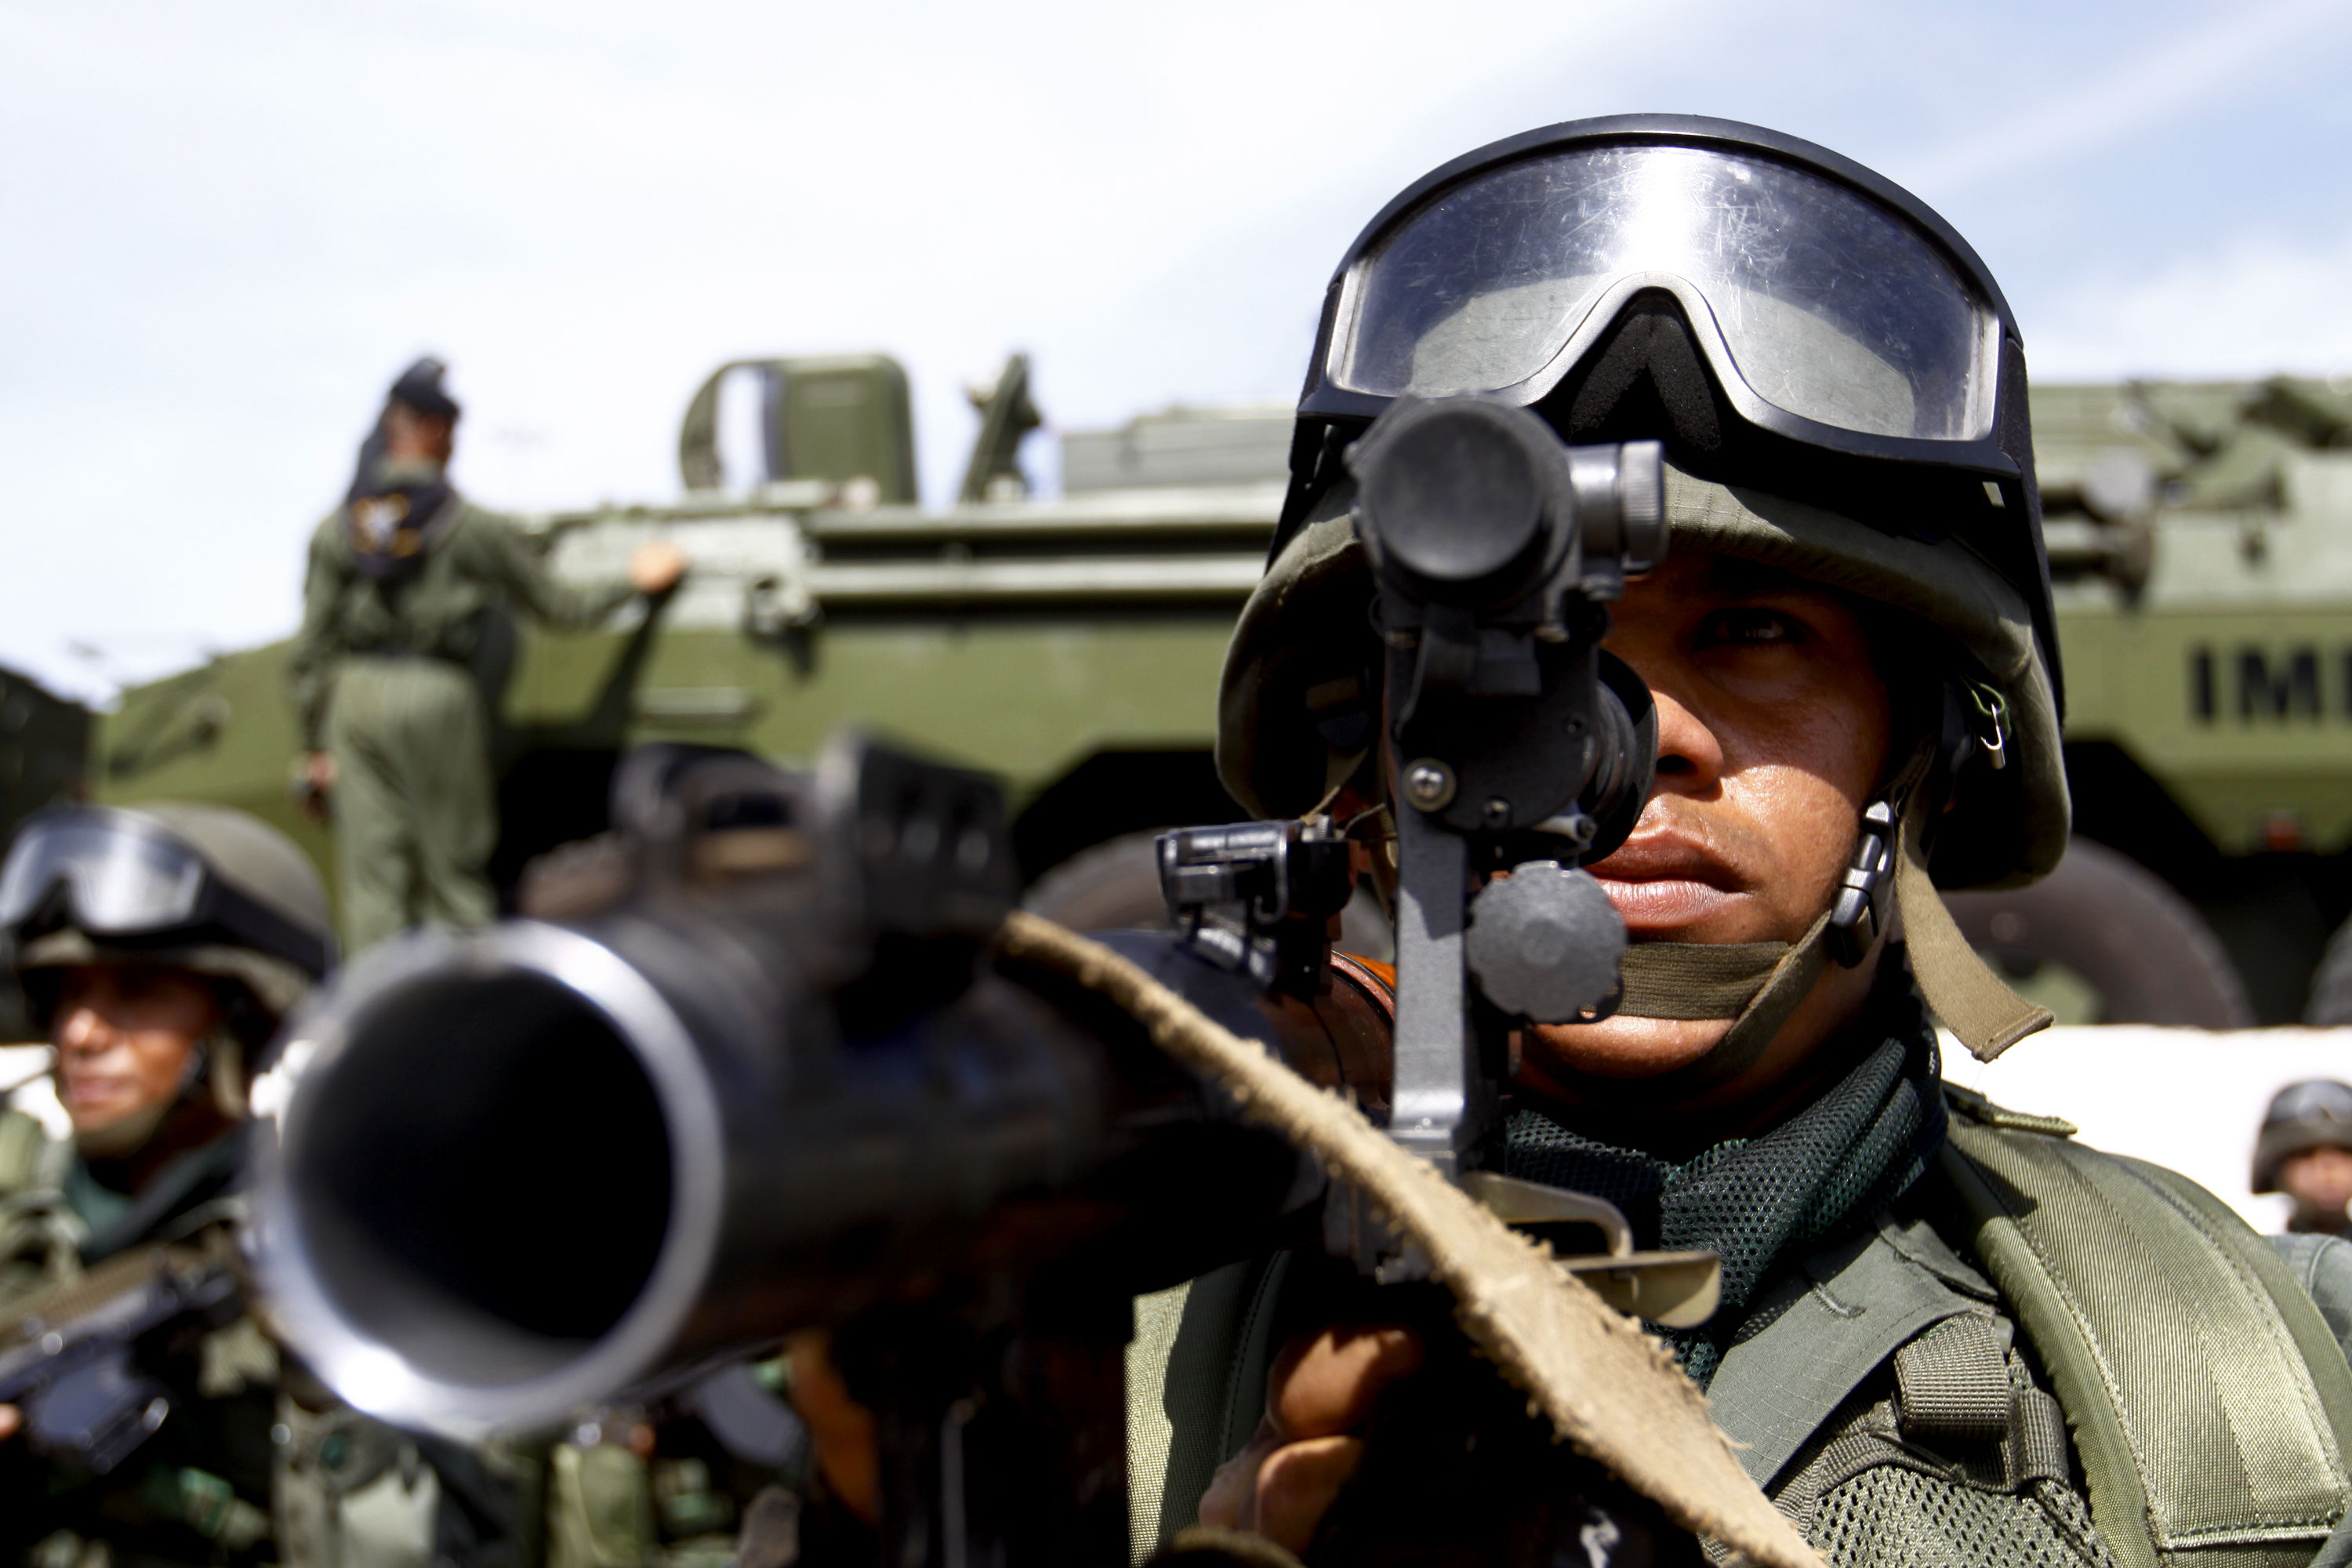 Вооружённые силы Боливии. Армия Боливии. Bolivian Armed Forces. Вс Боливии.